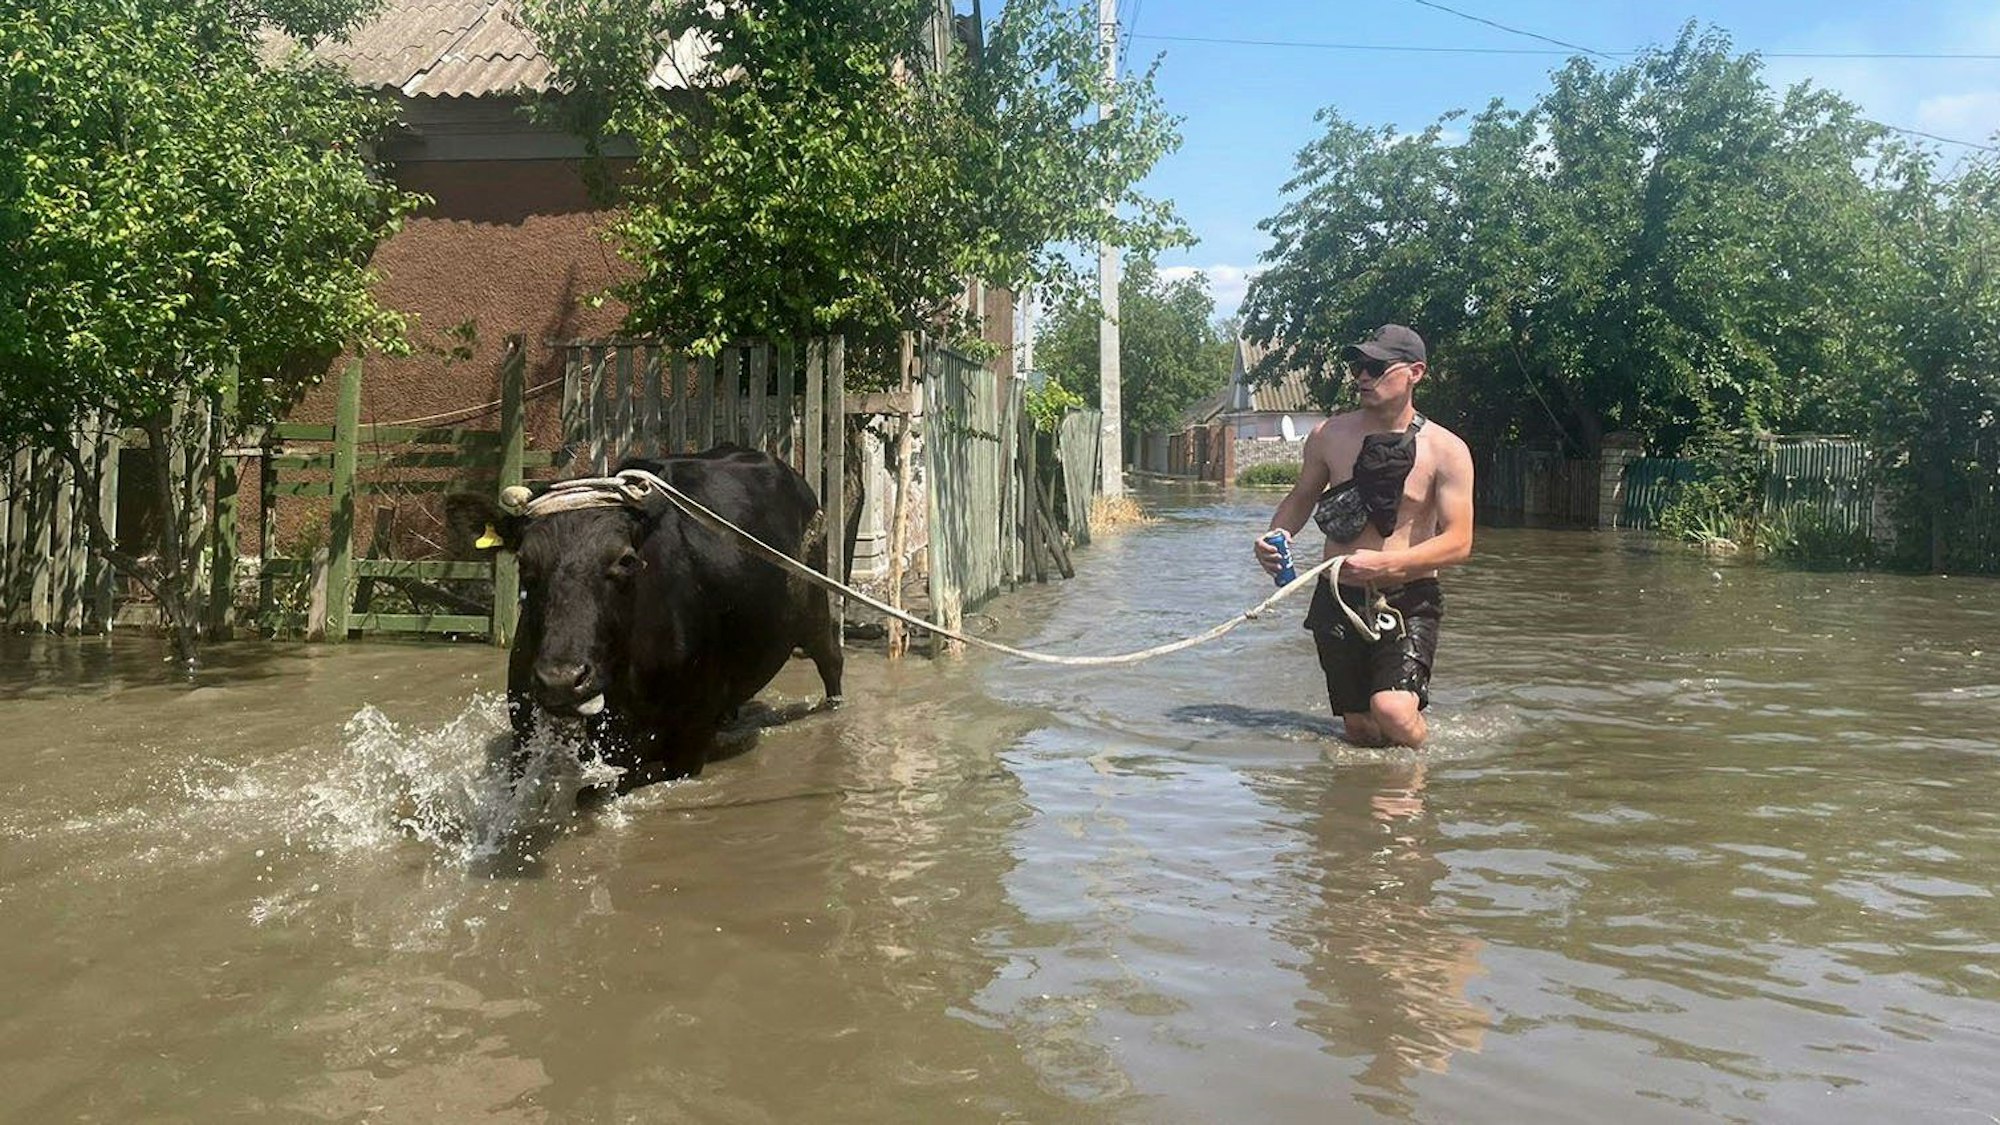 Ein Mann evakuiert eine Kuh aus einem überfluteten Viertel in Cherson. Der russische Angriffskrieg gegen die Ukraine ist durch die Sprengung des wichtigen Kachowka-Staudamms gefährlich eskaliert.